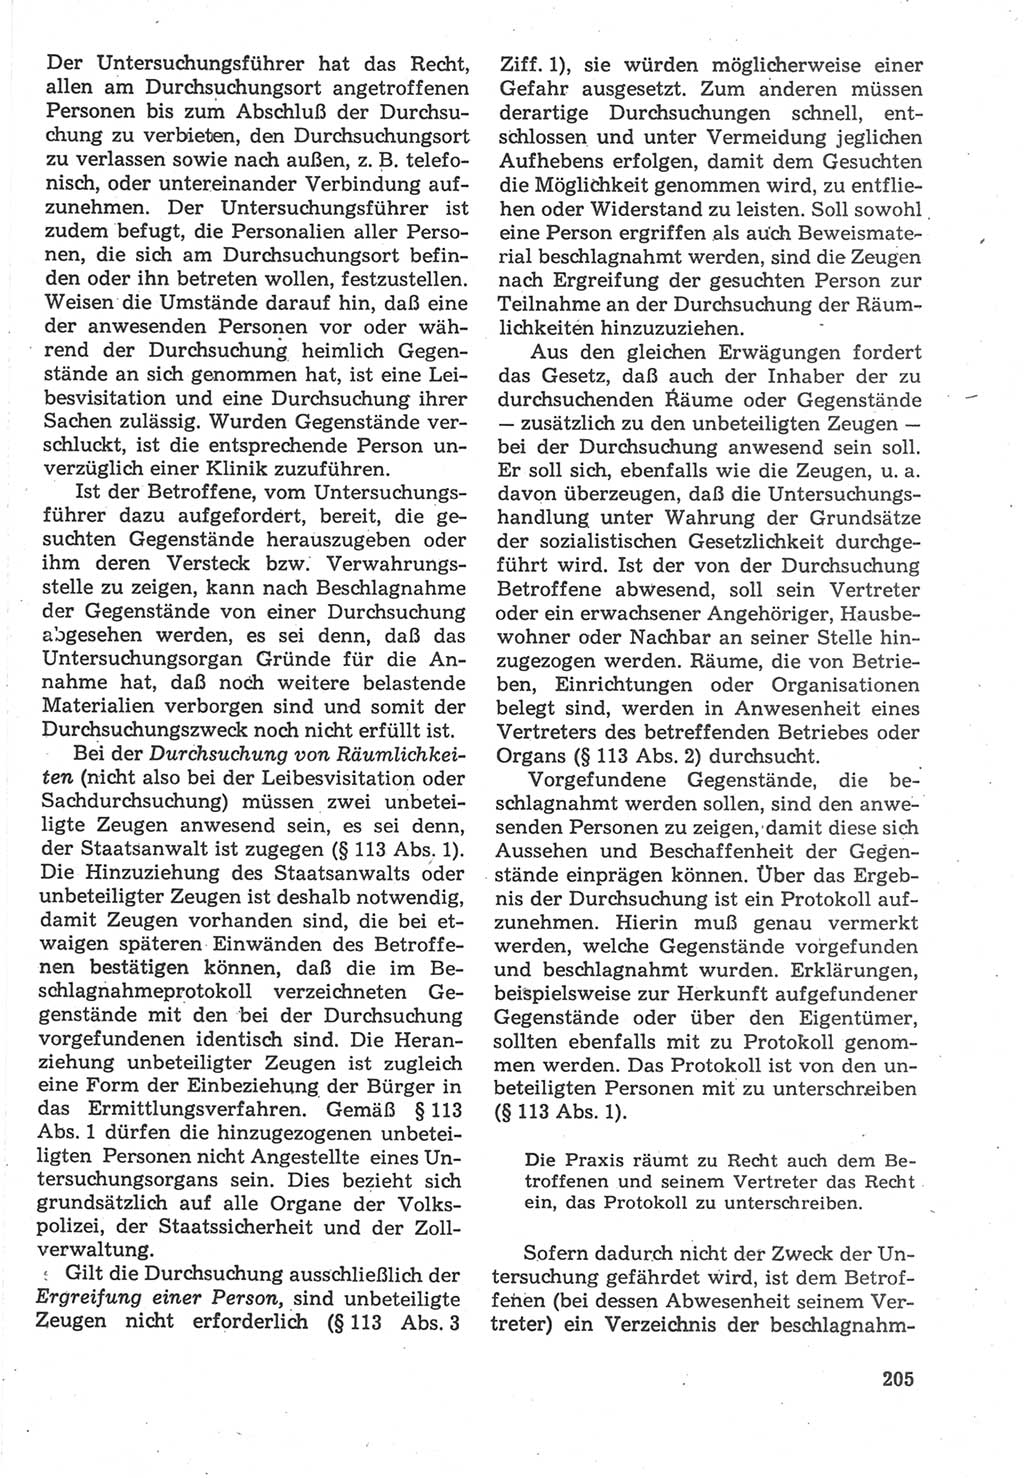 Strafverfahrensrecht [Deutsche Demokratische Republik (DDR)], Lehrbuch 1987, Seite 205 (Strafverf.-R. DDR Lb. 1987, S. 205)